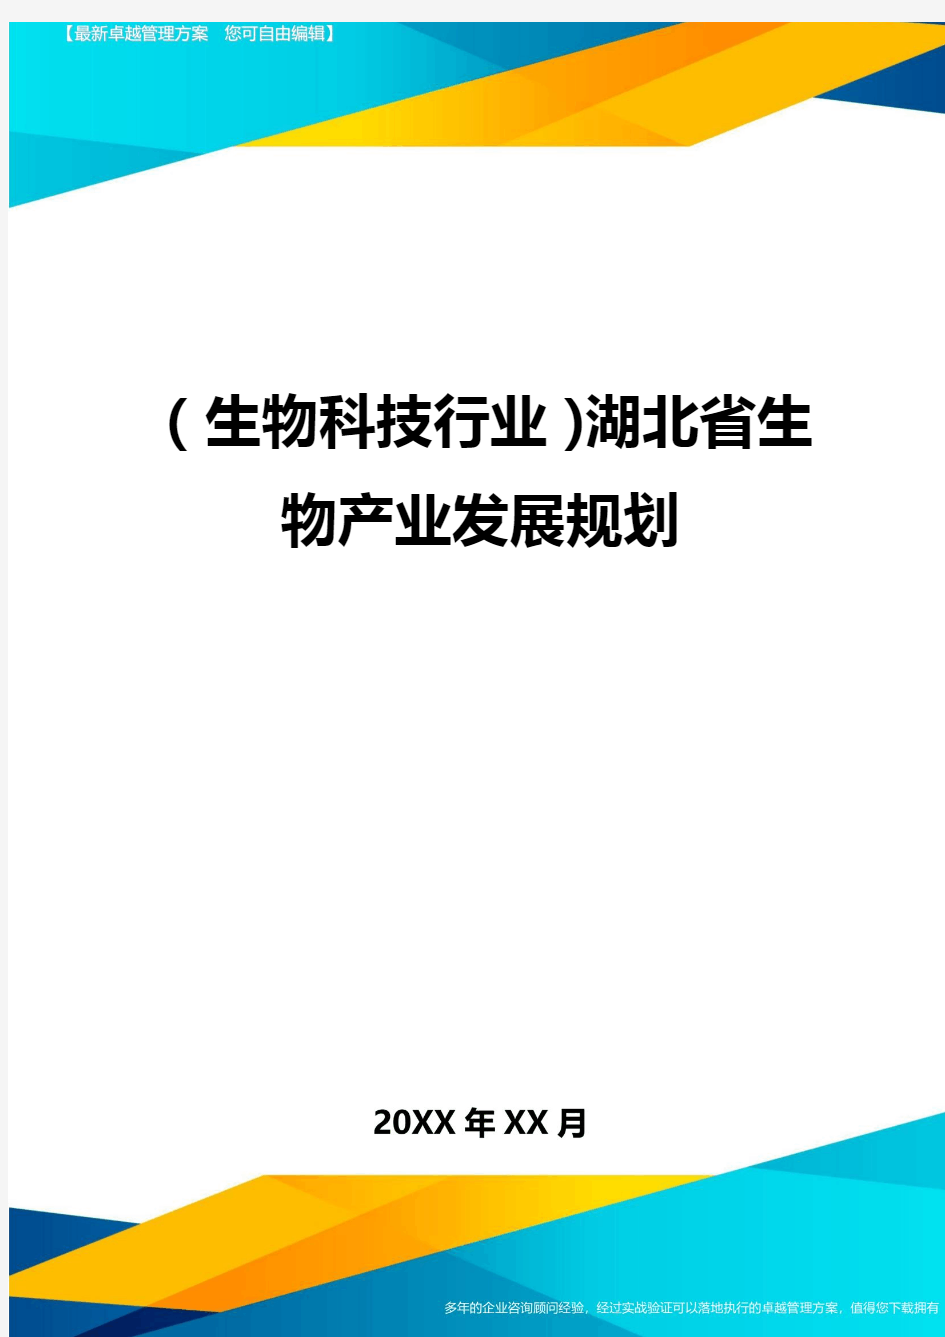 2020年(生物科技行业)湖北省生物产业发展规划